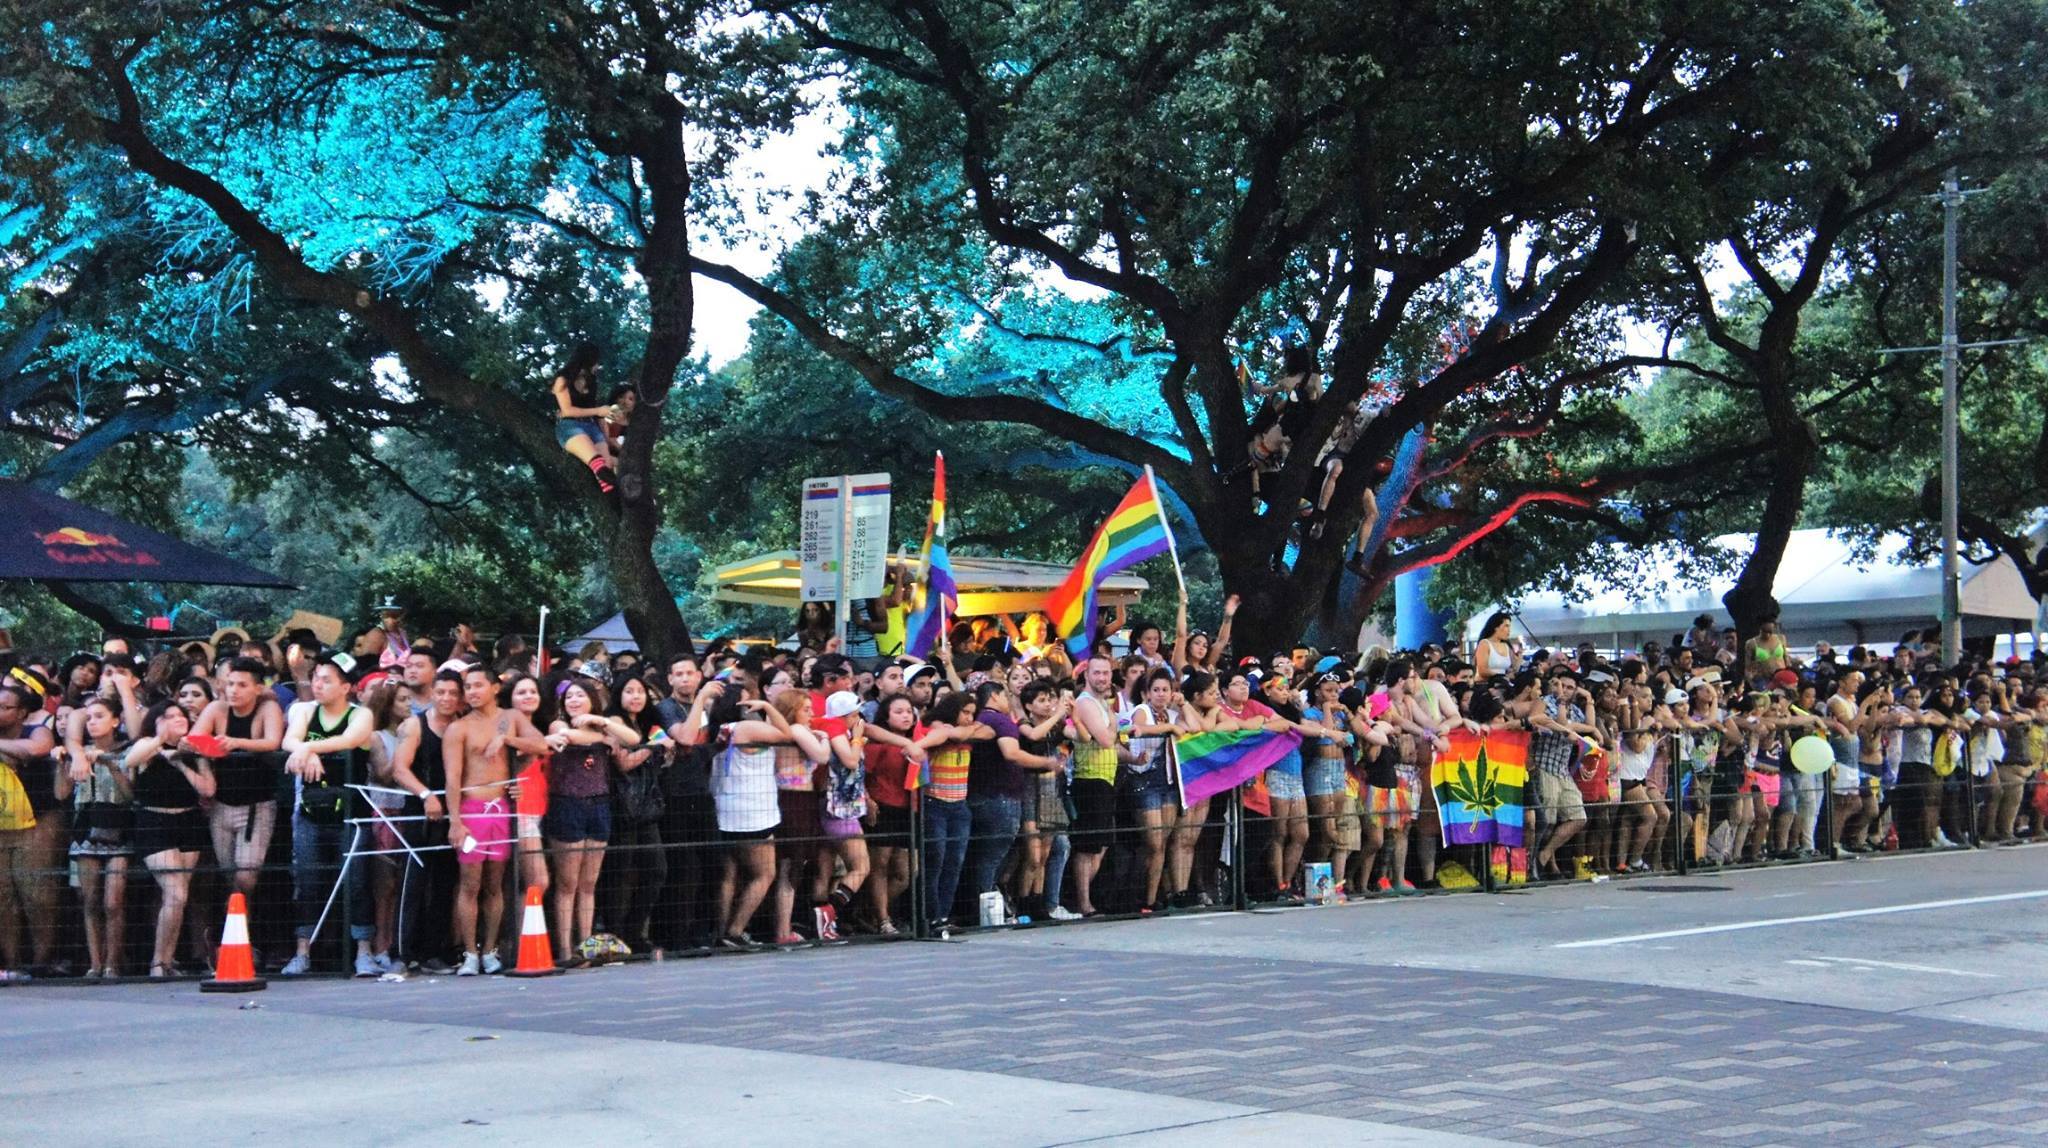 houston gay pride parade 2021 dates